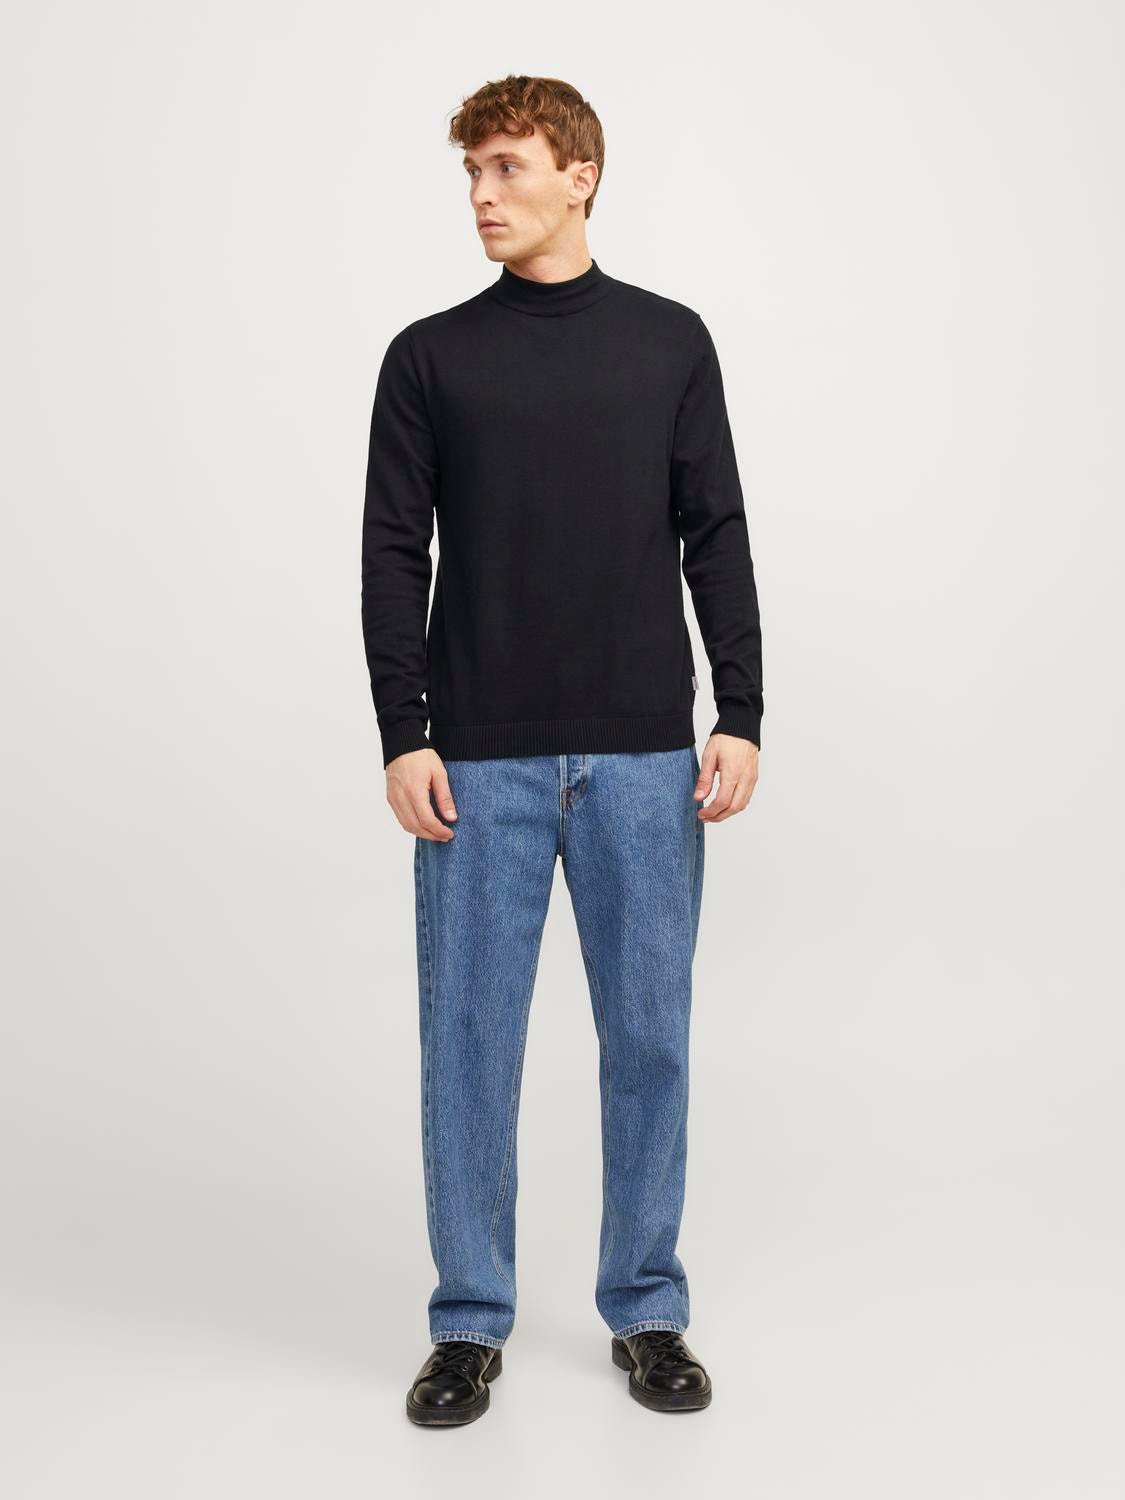 Jack & Jones Plain Knitted pullover -Black - 12190170